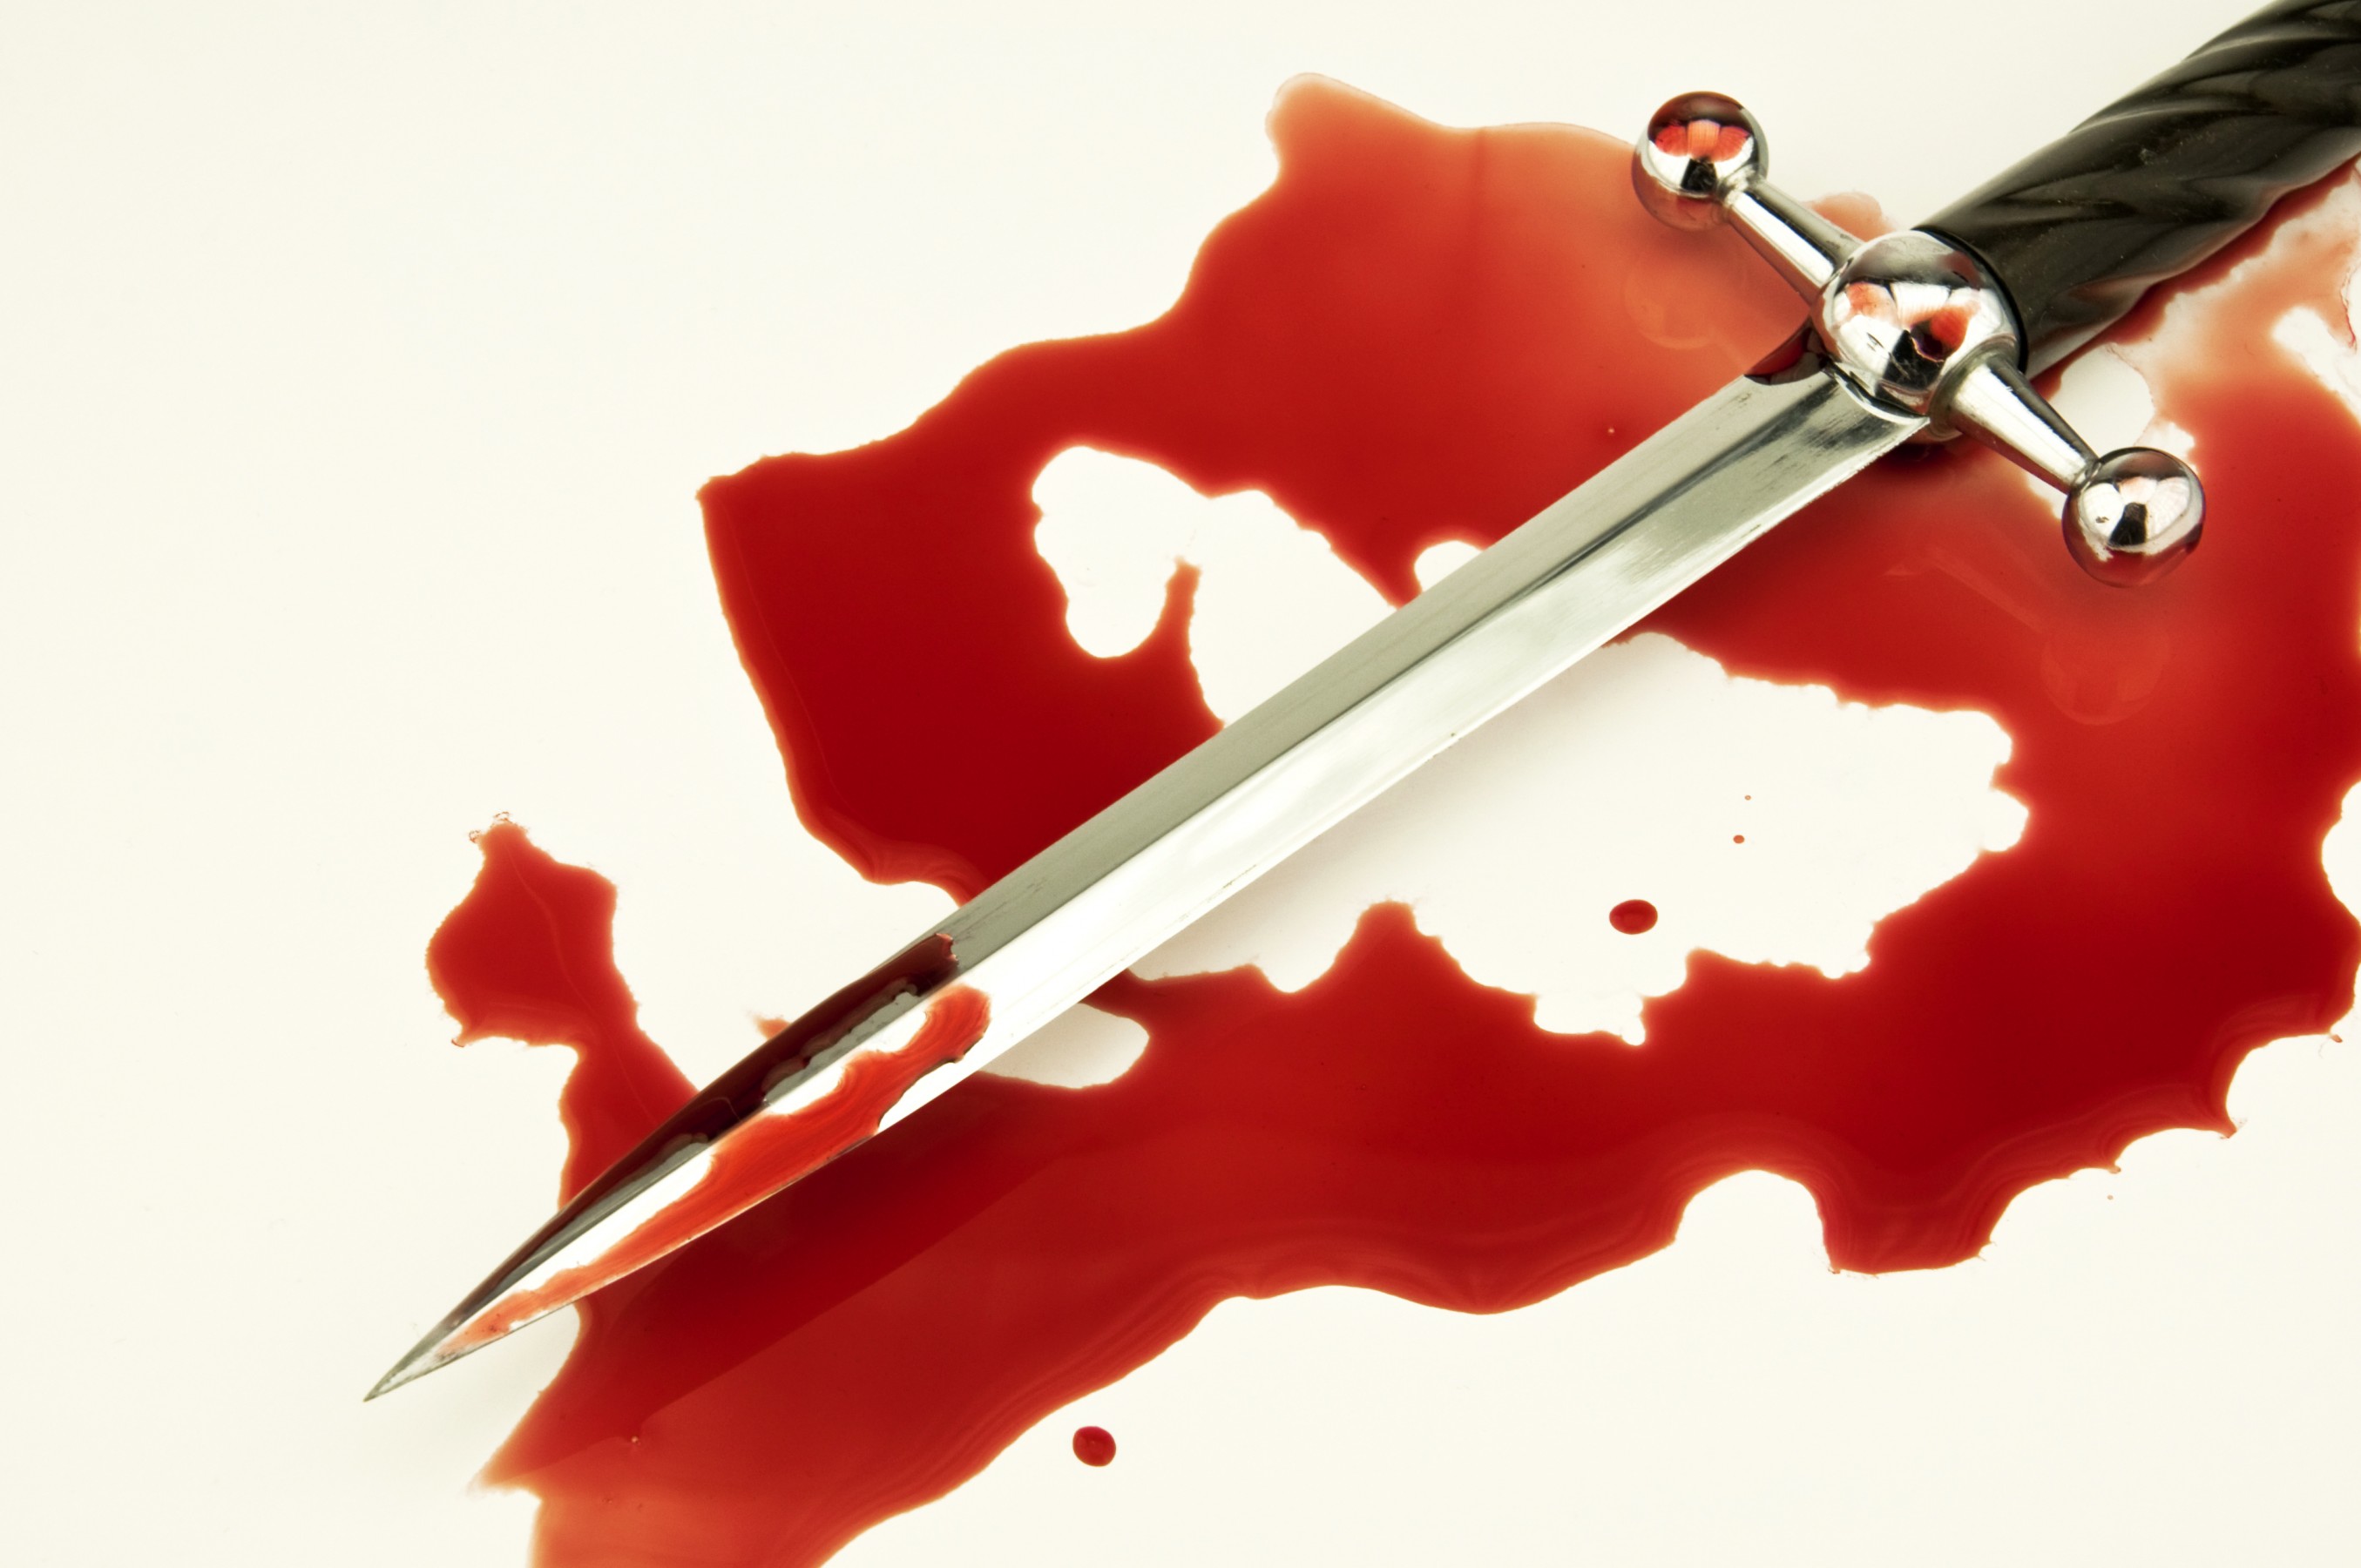 Нож в крови на столе